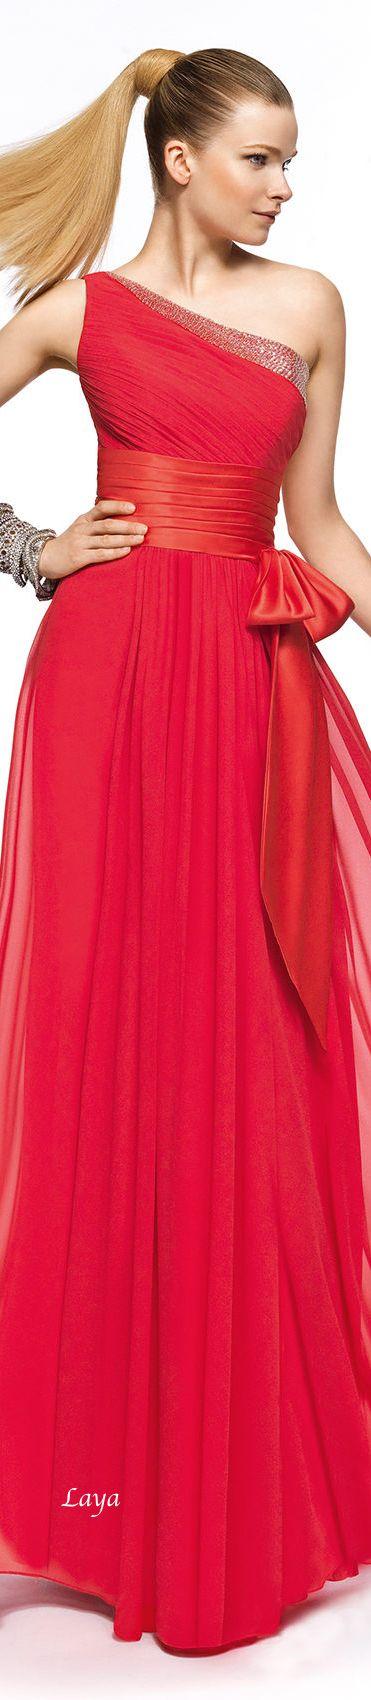 Wedding - Gowns...Ravishing Reds